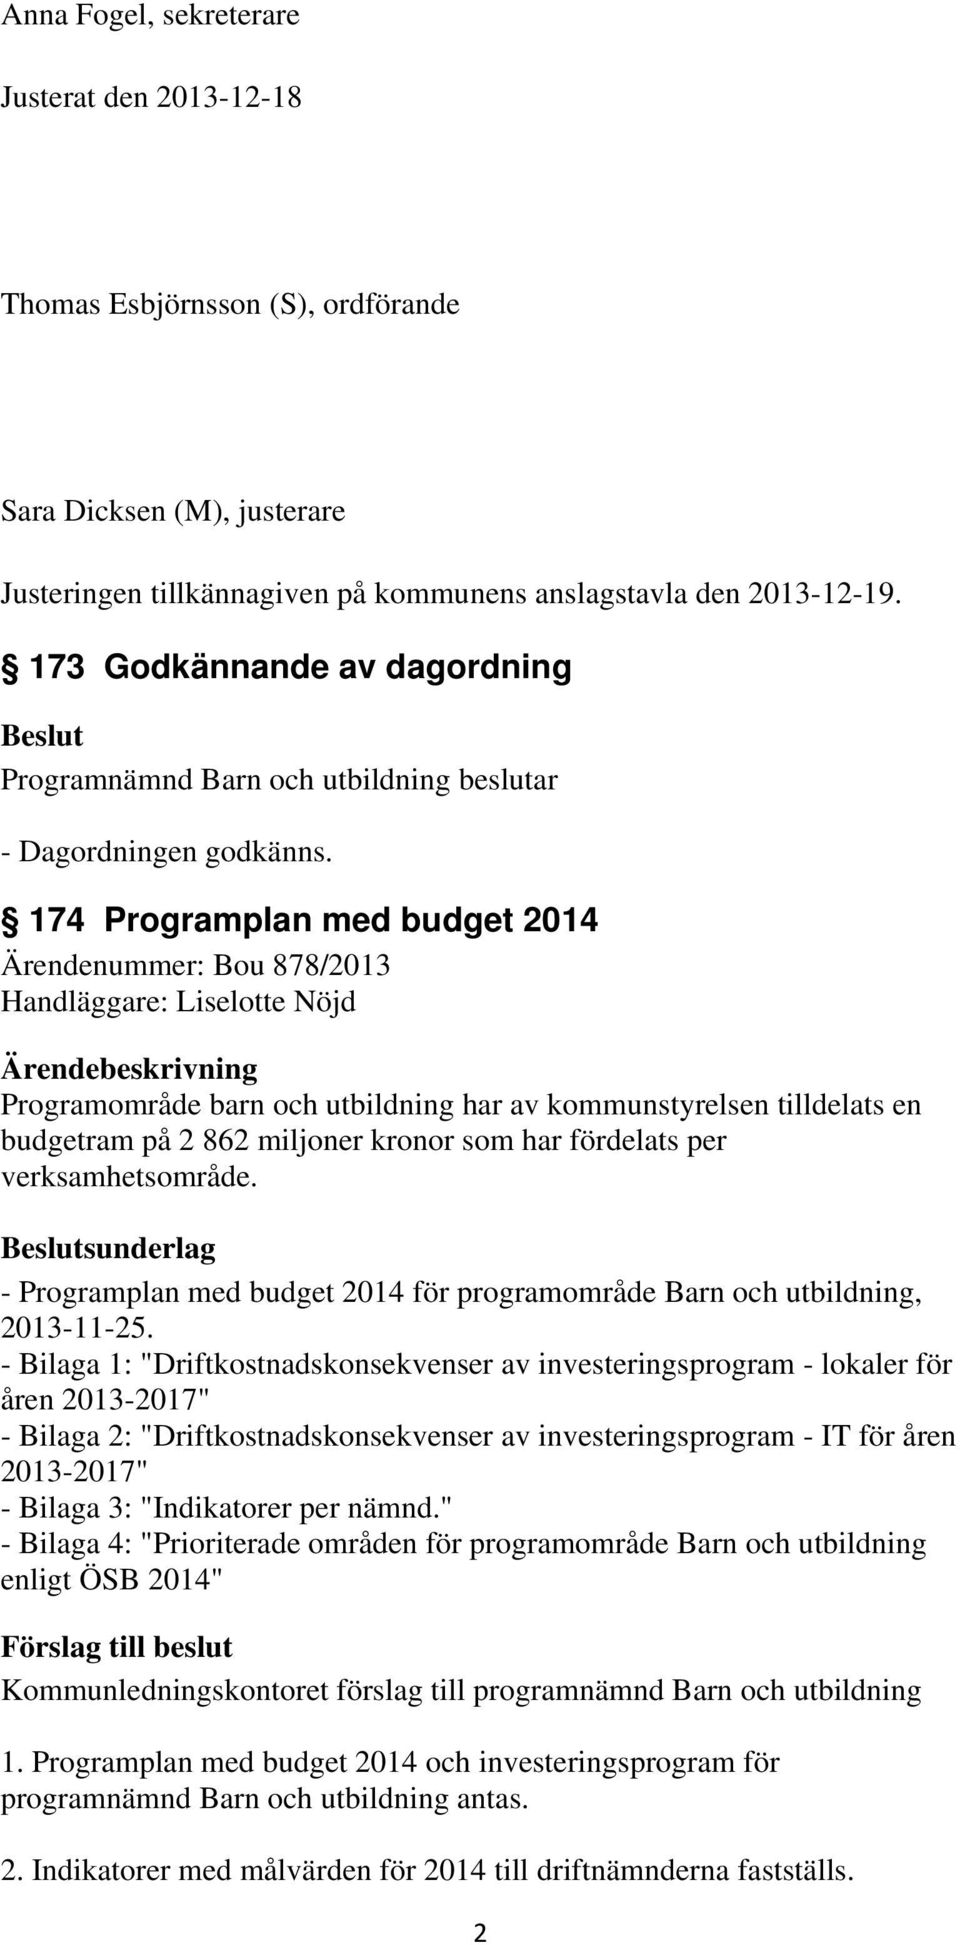 174 Programplan med budget 2014 Ärendenummer: Bou 878/2013 Handläggare: Liselotte Nöjd Ärendebeskrivning Programområde barn och utbildning har av kommunstyrelsen tilldelats en budgetram på 2 862